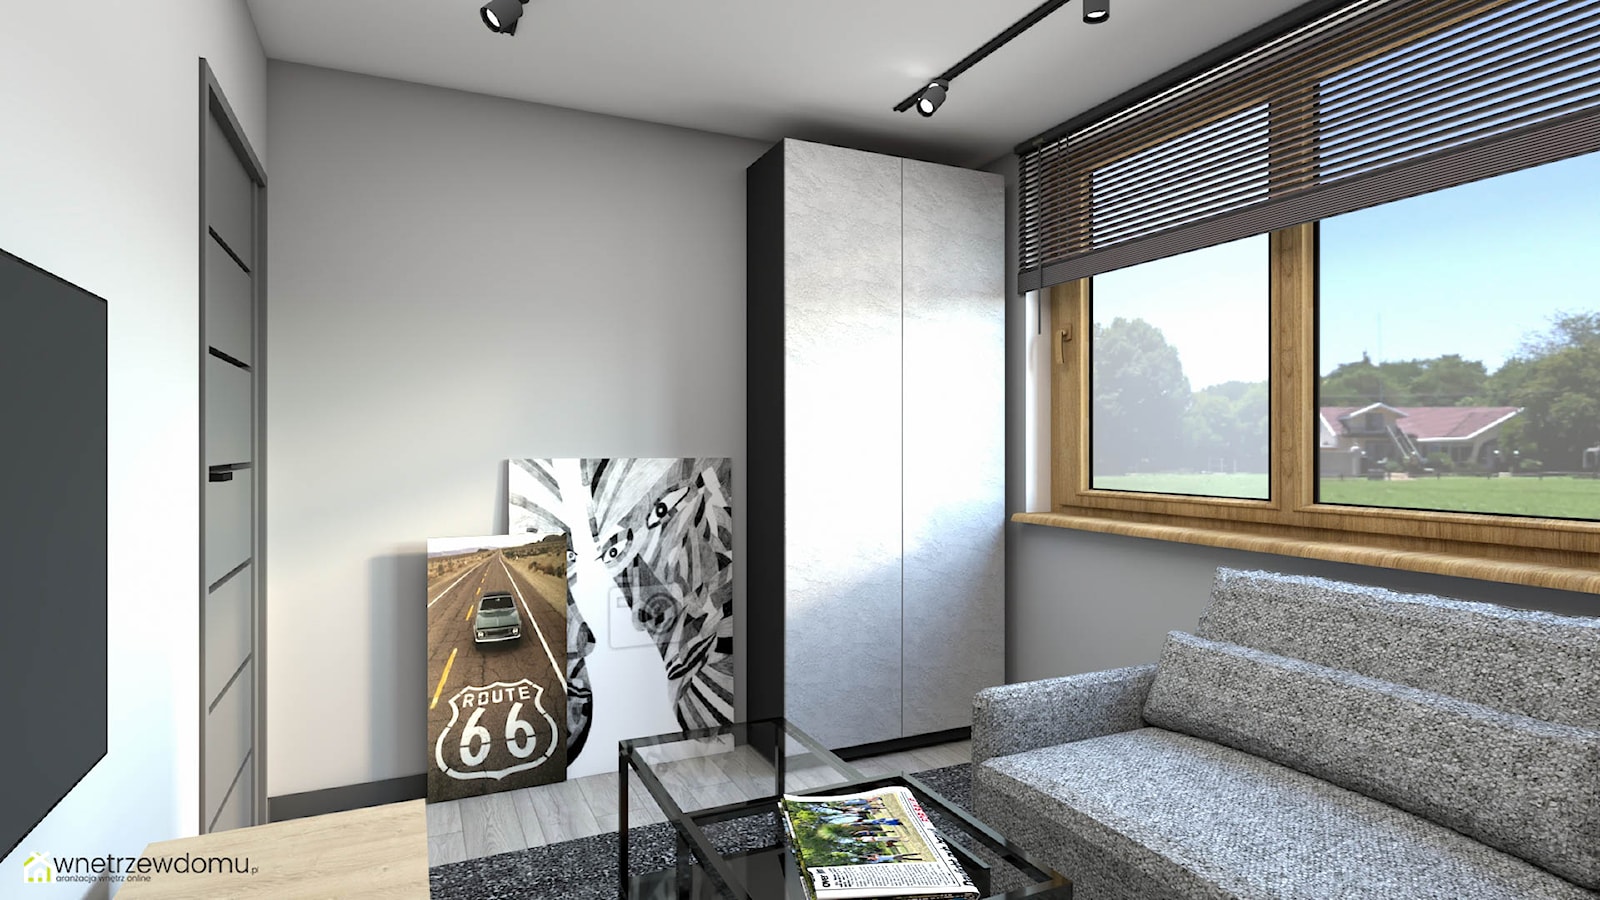 Pokój dla nastolatka ze ścianą wykończoną cegłą - zdjęcie od wnetrzewdomu - Homebook